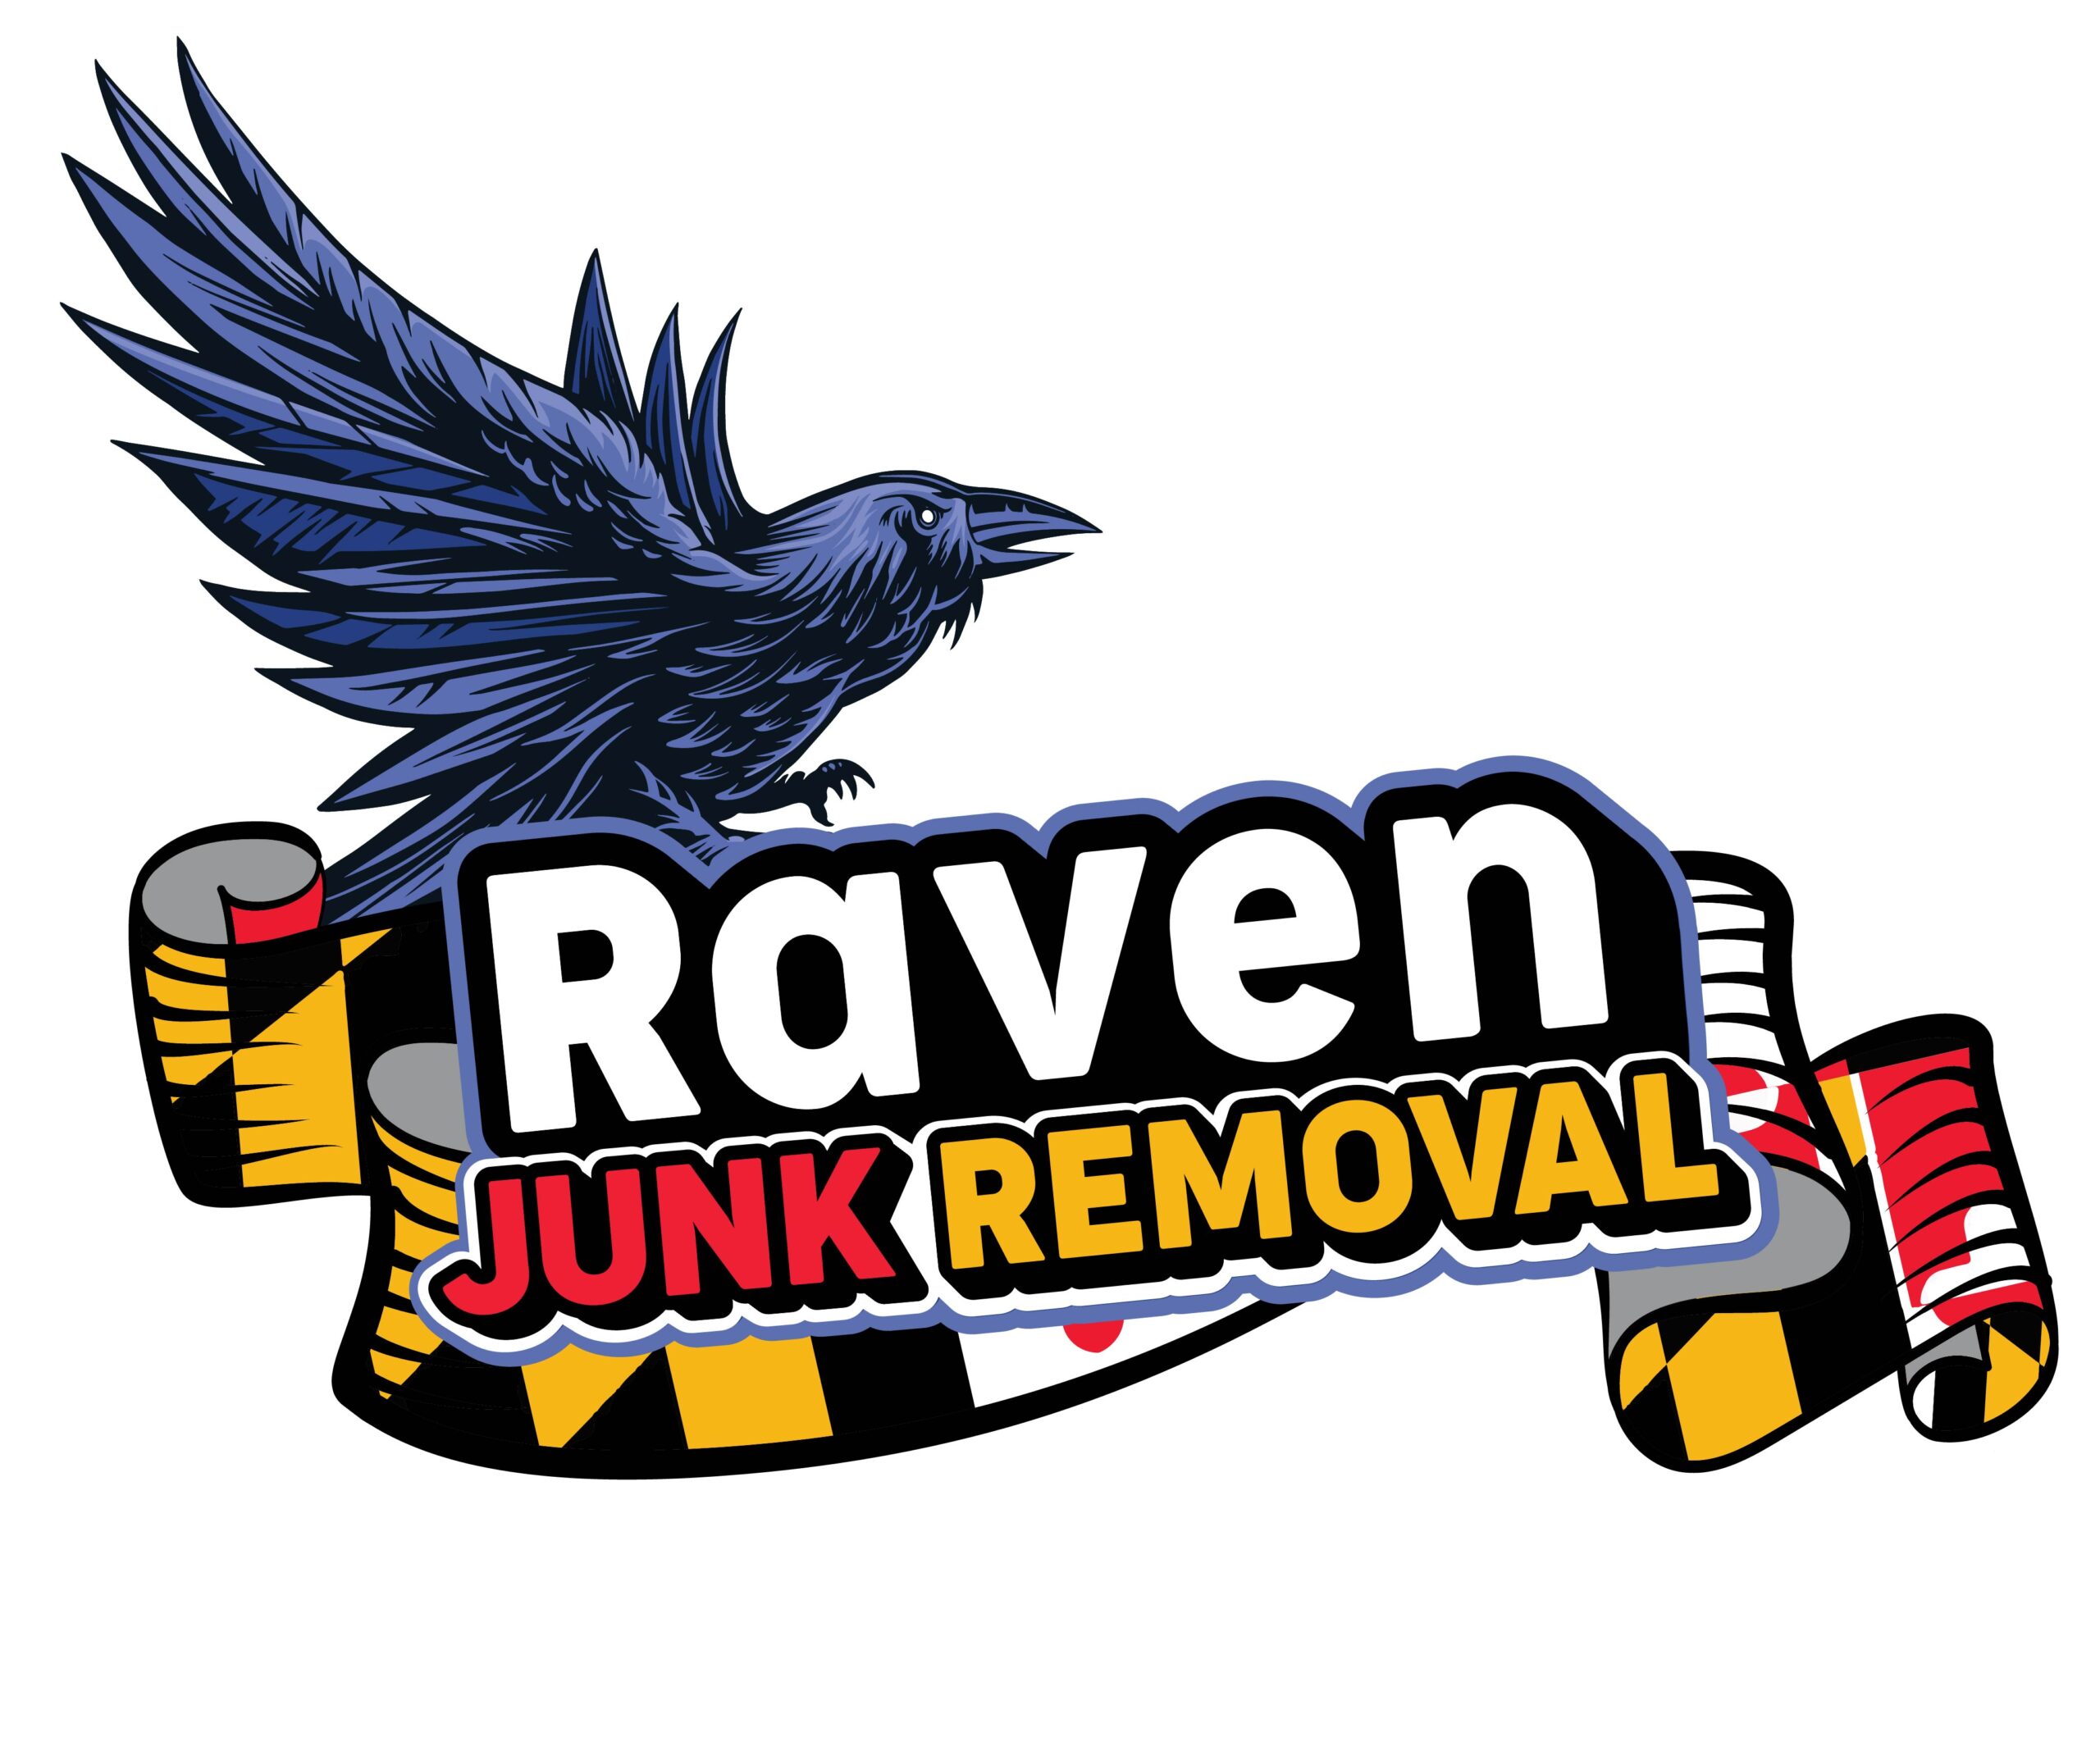 Raven Junk Removal